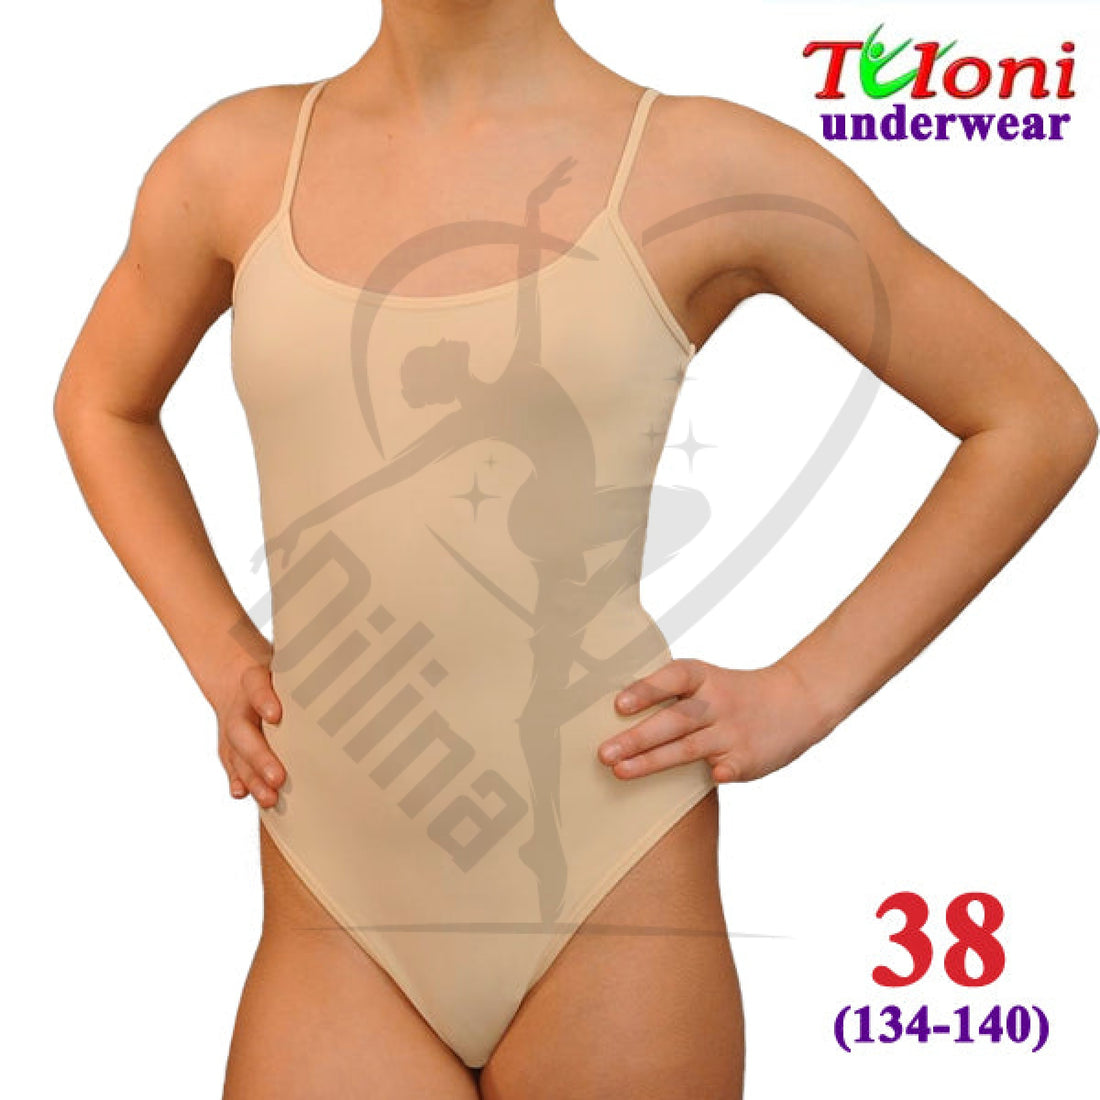 Tuloni Under Leotard 38 (134-140) Underwear